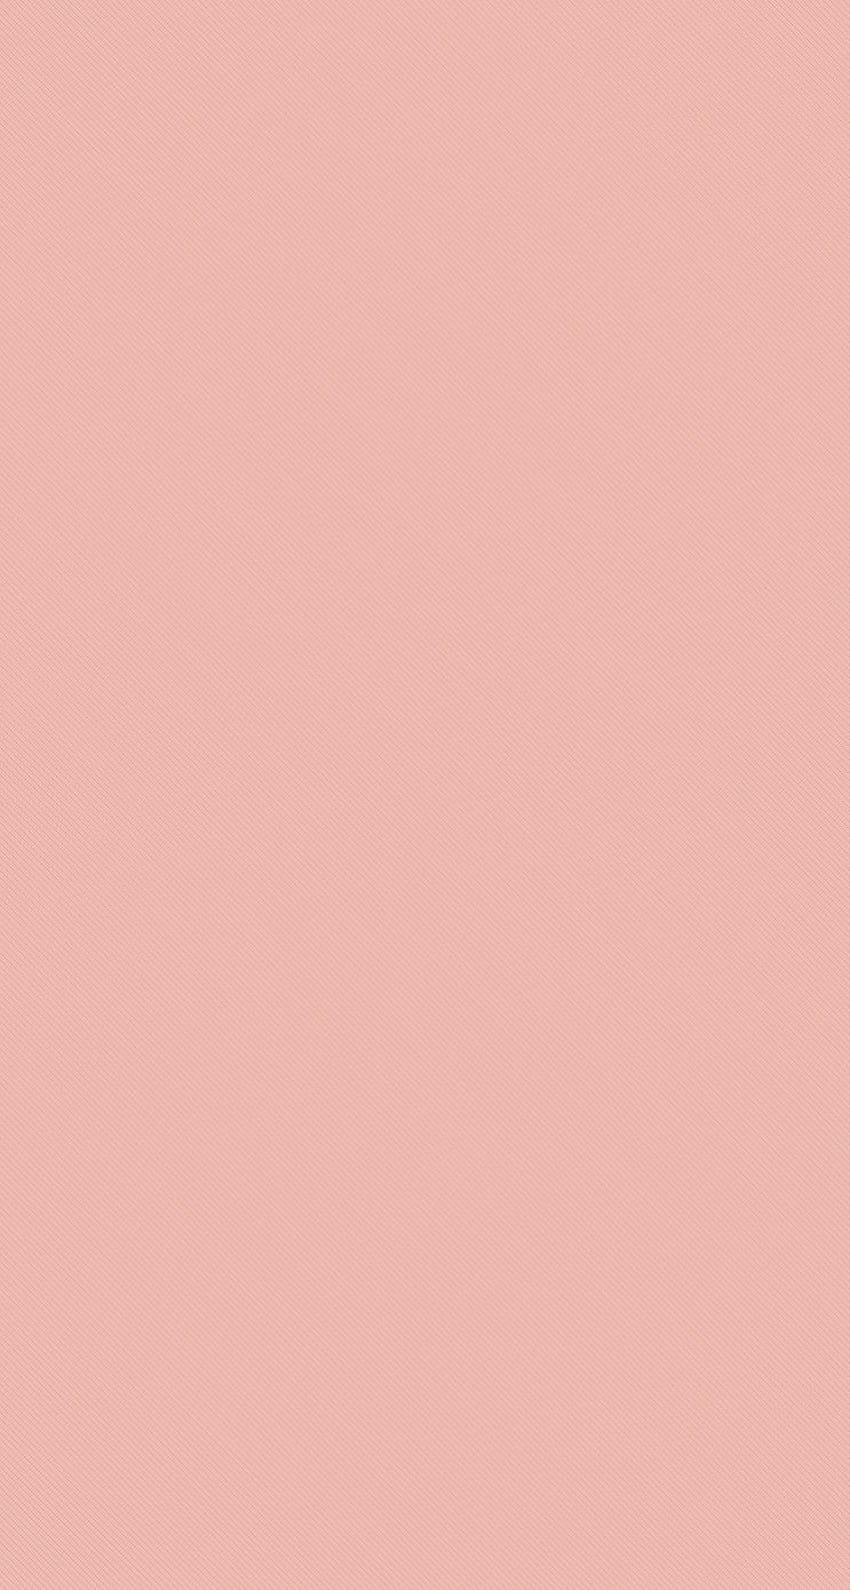 41 Pastel plain color ideas, plane color HD phone wallpaper | Pxfuel